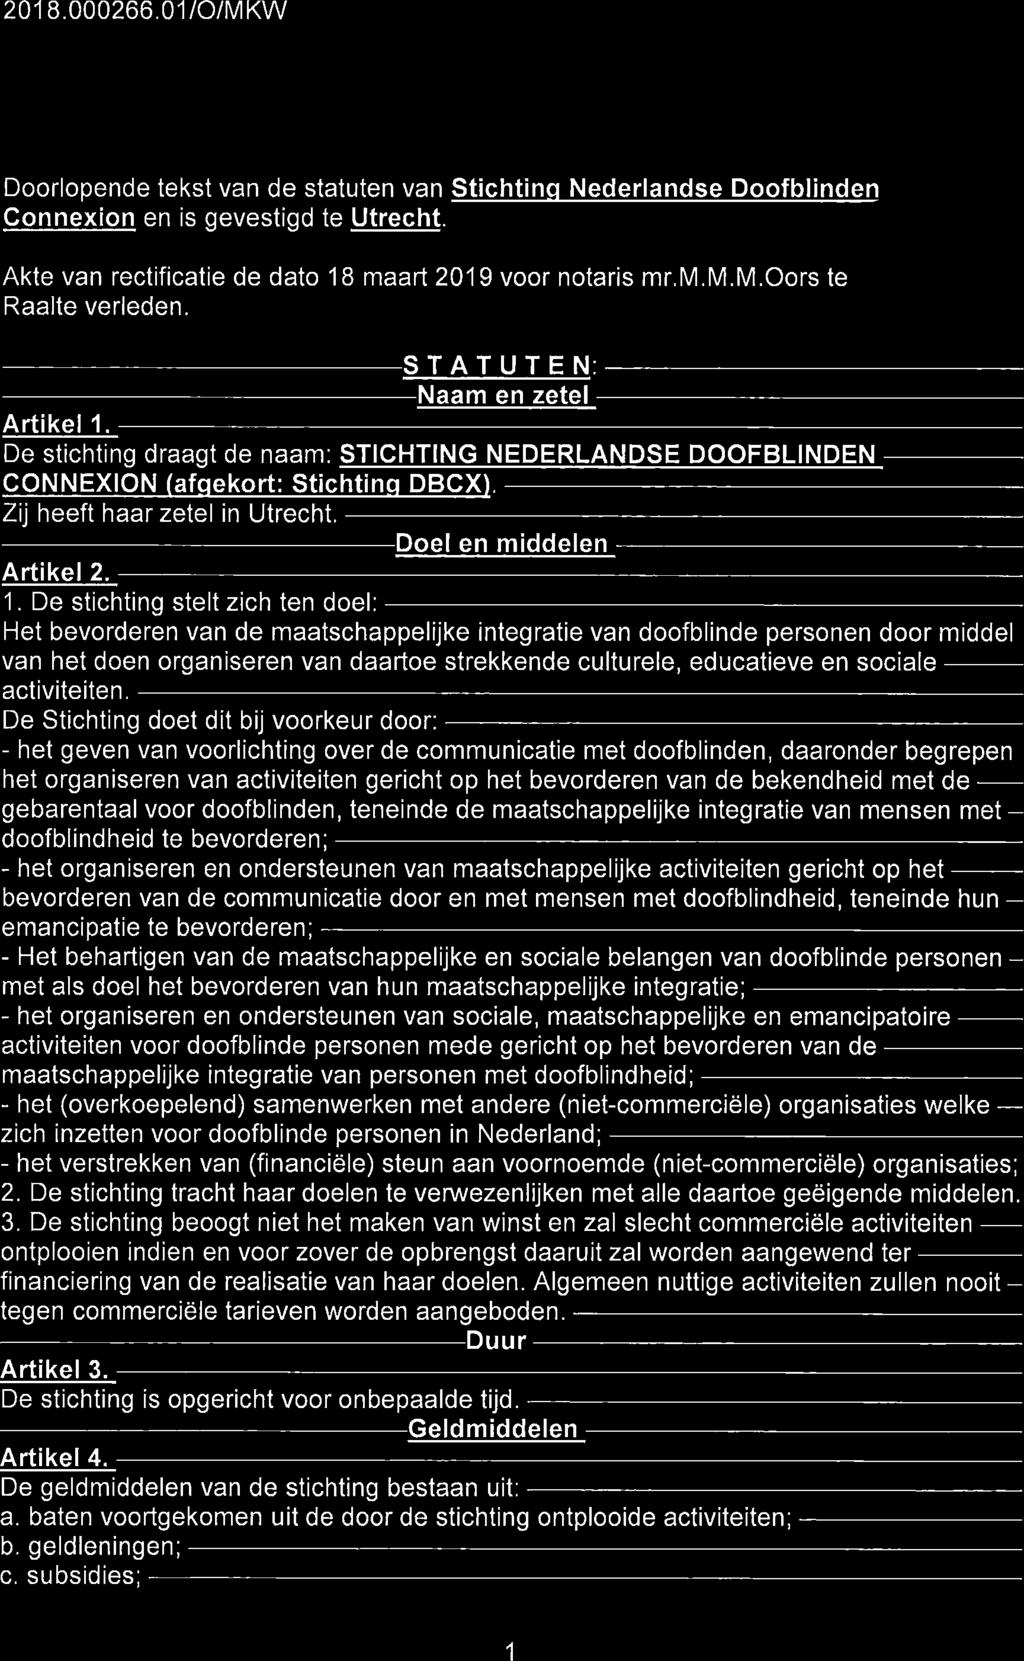 2018.000266.01/0/MKW Doorlopende tekst van de statuten van Stichtinq Nederlandse Doofblinden Connexion en is gevestigd te Utrecht. Akte van rectificatie de dato 18 maart 2019 voor notaris mr.m.m.m.oors te Raalte verleden.